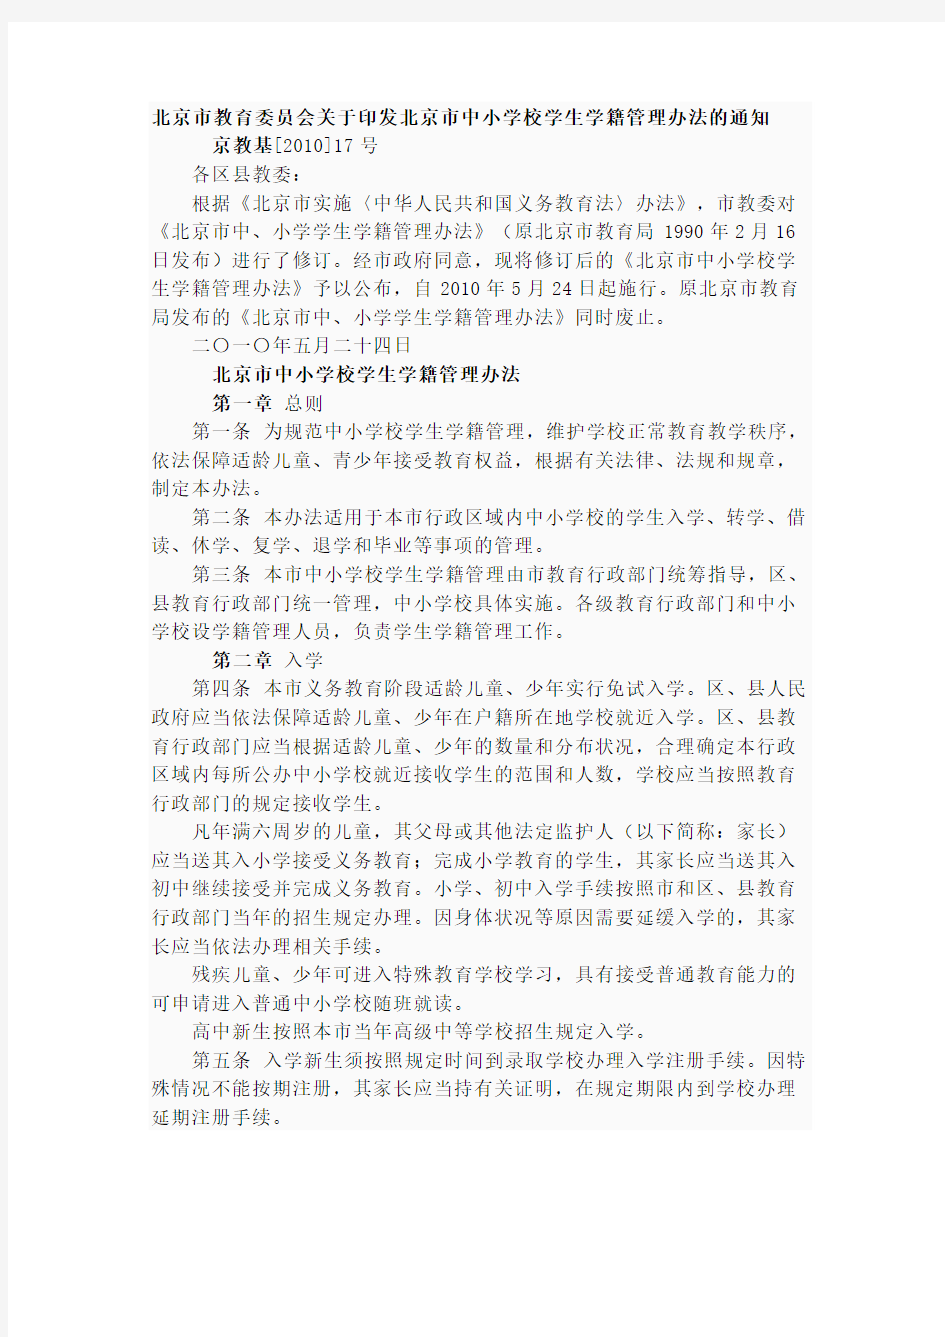 北京市教育委员会关于印发北京市中小学校学生学籍管理办法的通知